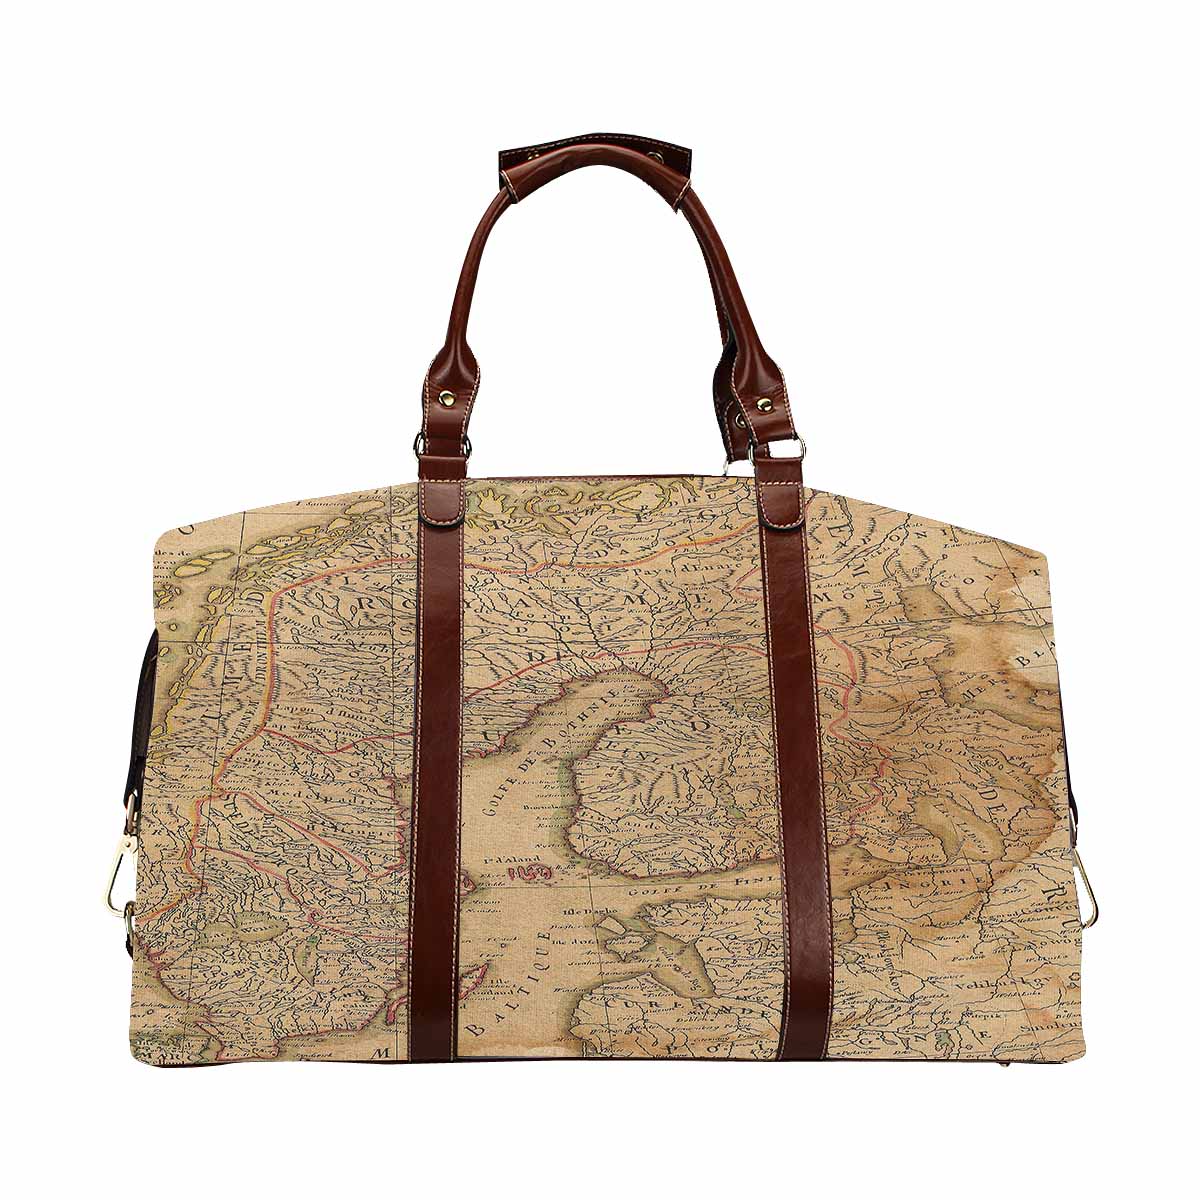 Antique Map design travel bag, Model 1695343, Design 42